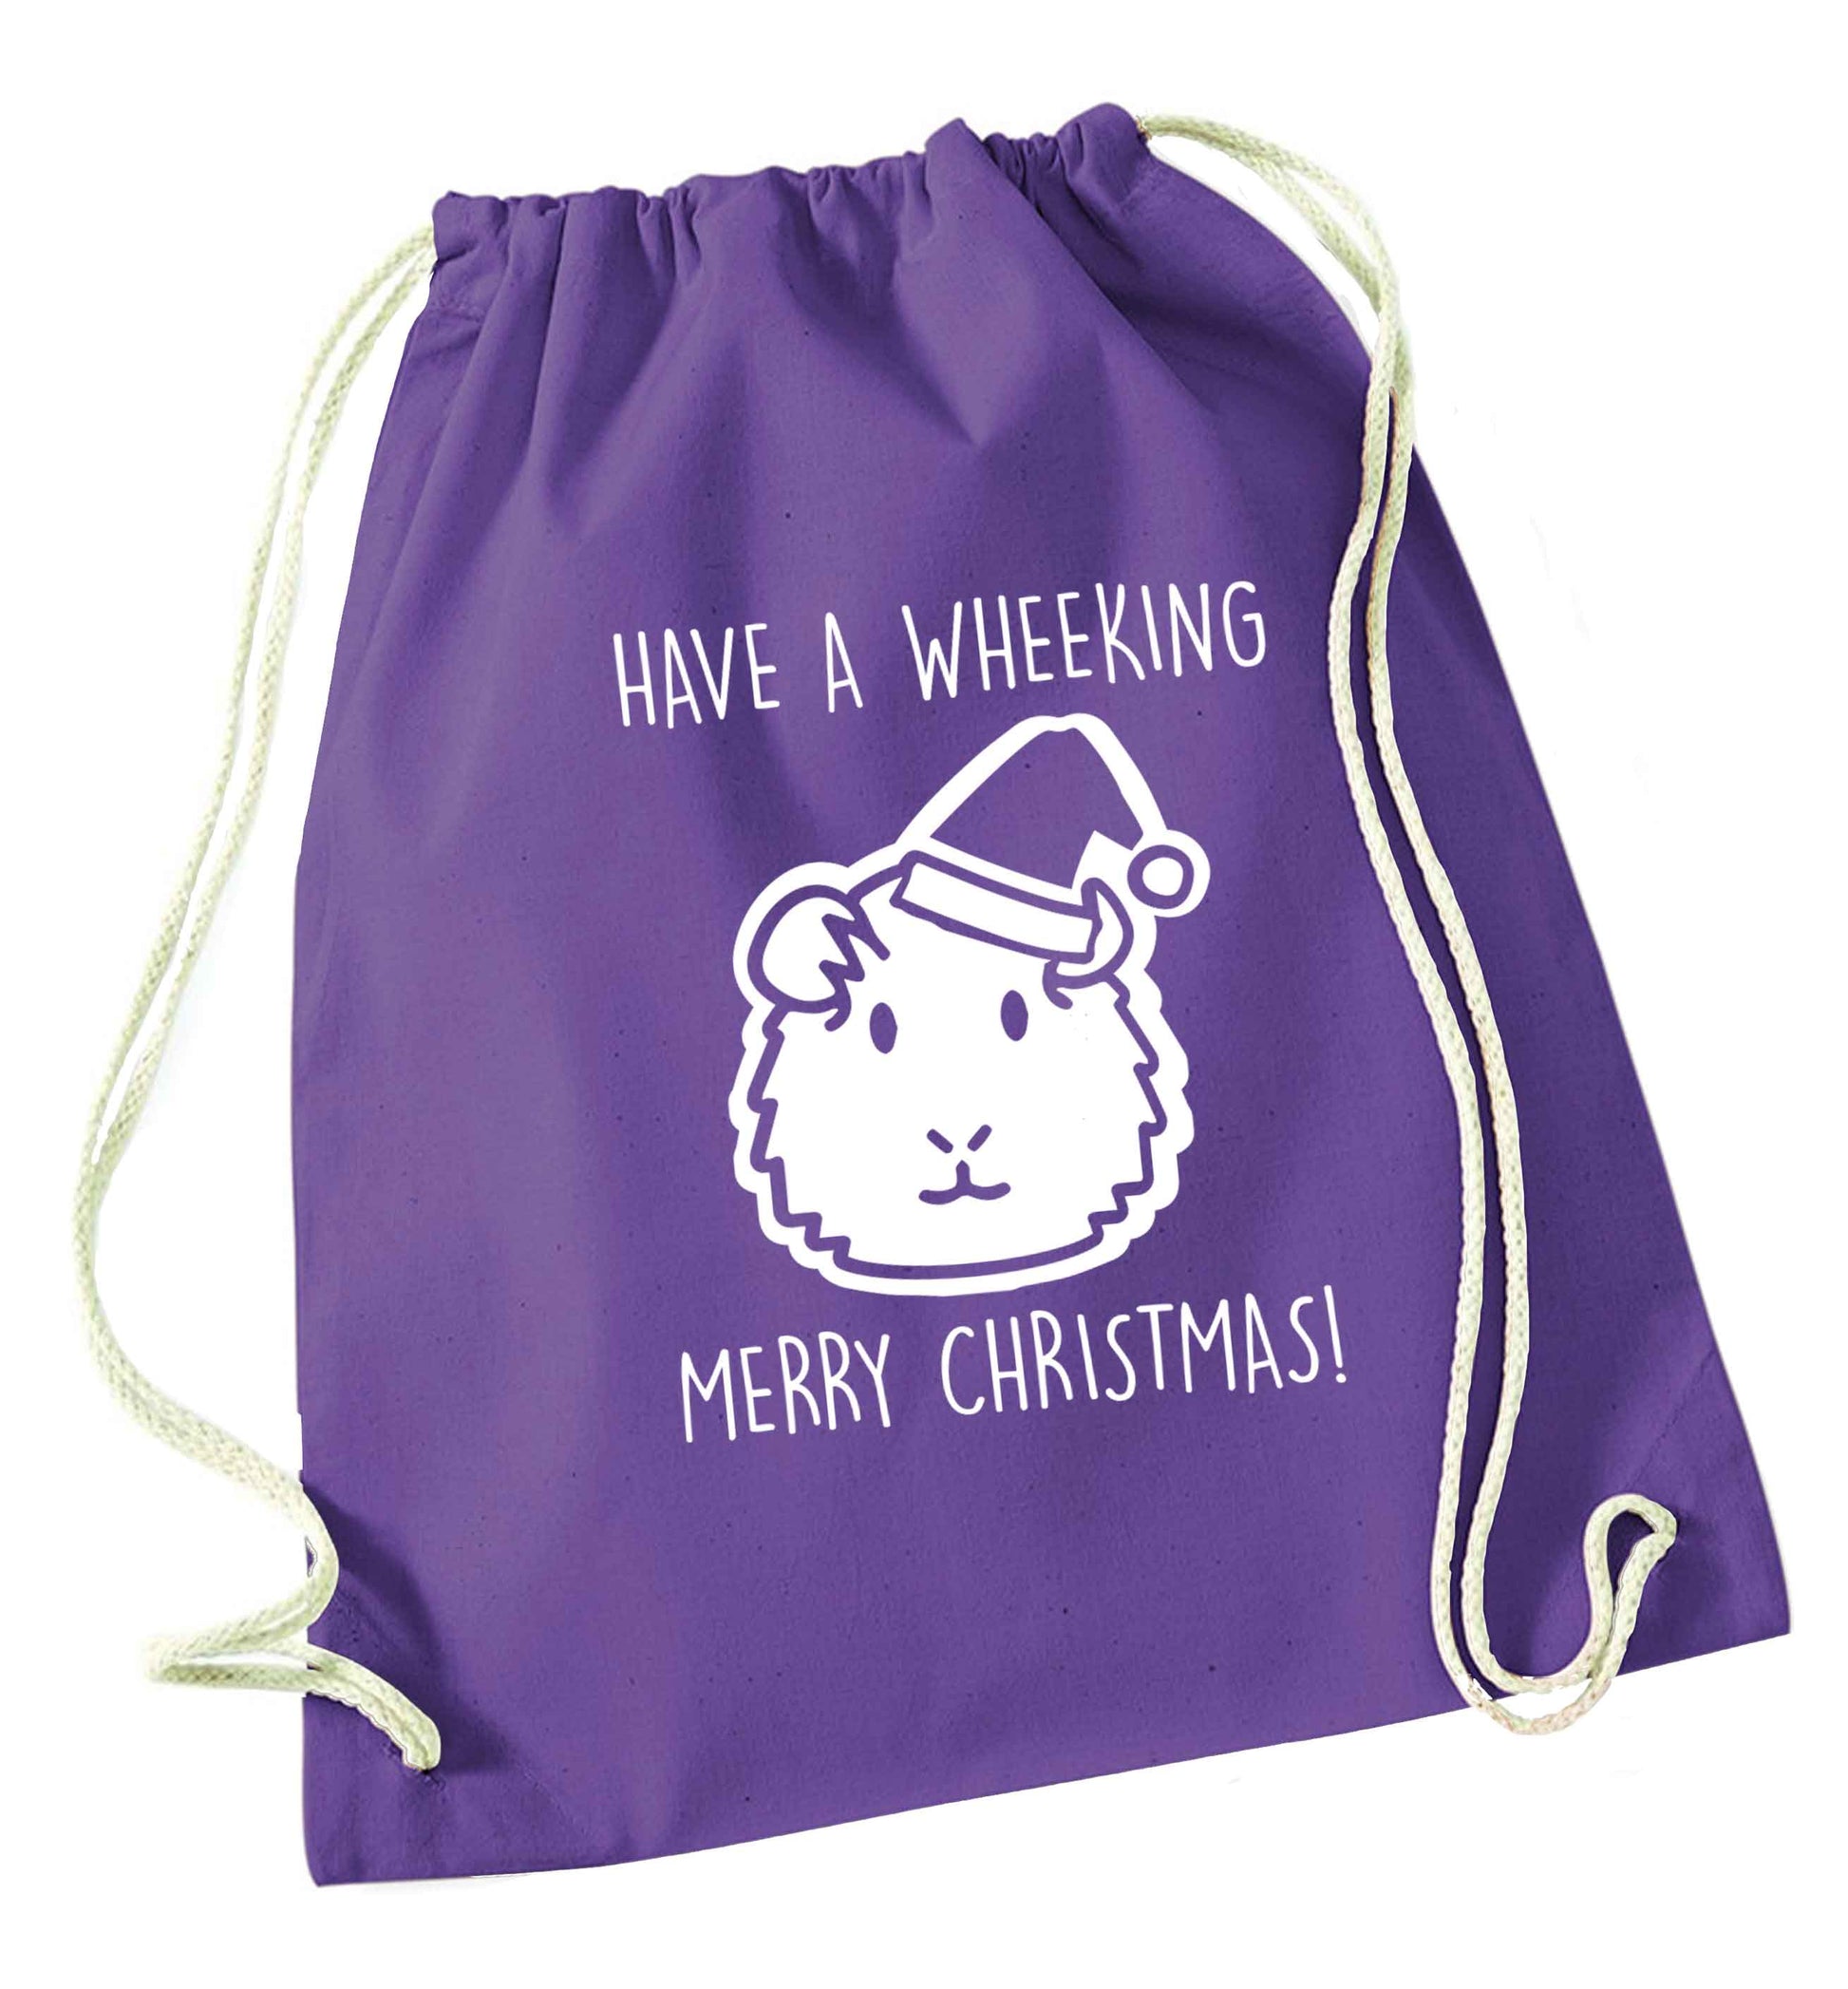 Have a wheeking merry Christmas purple drawstring bag